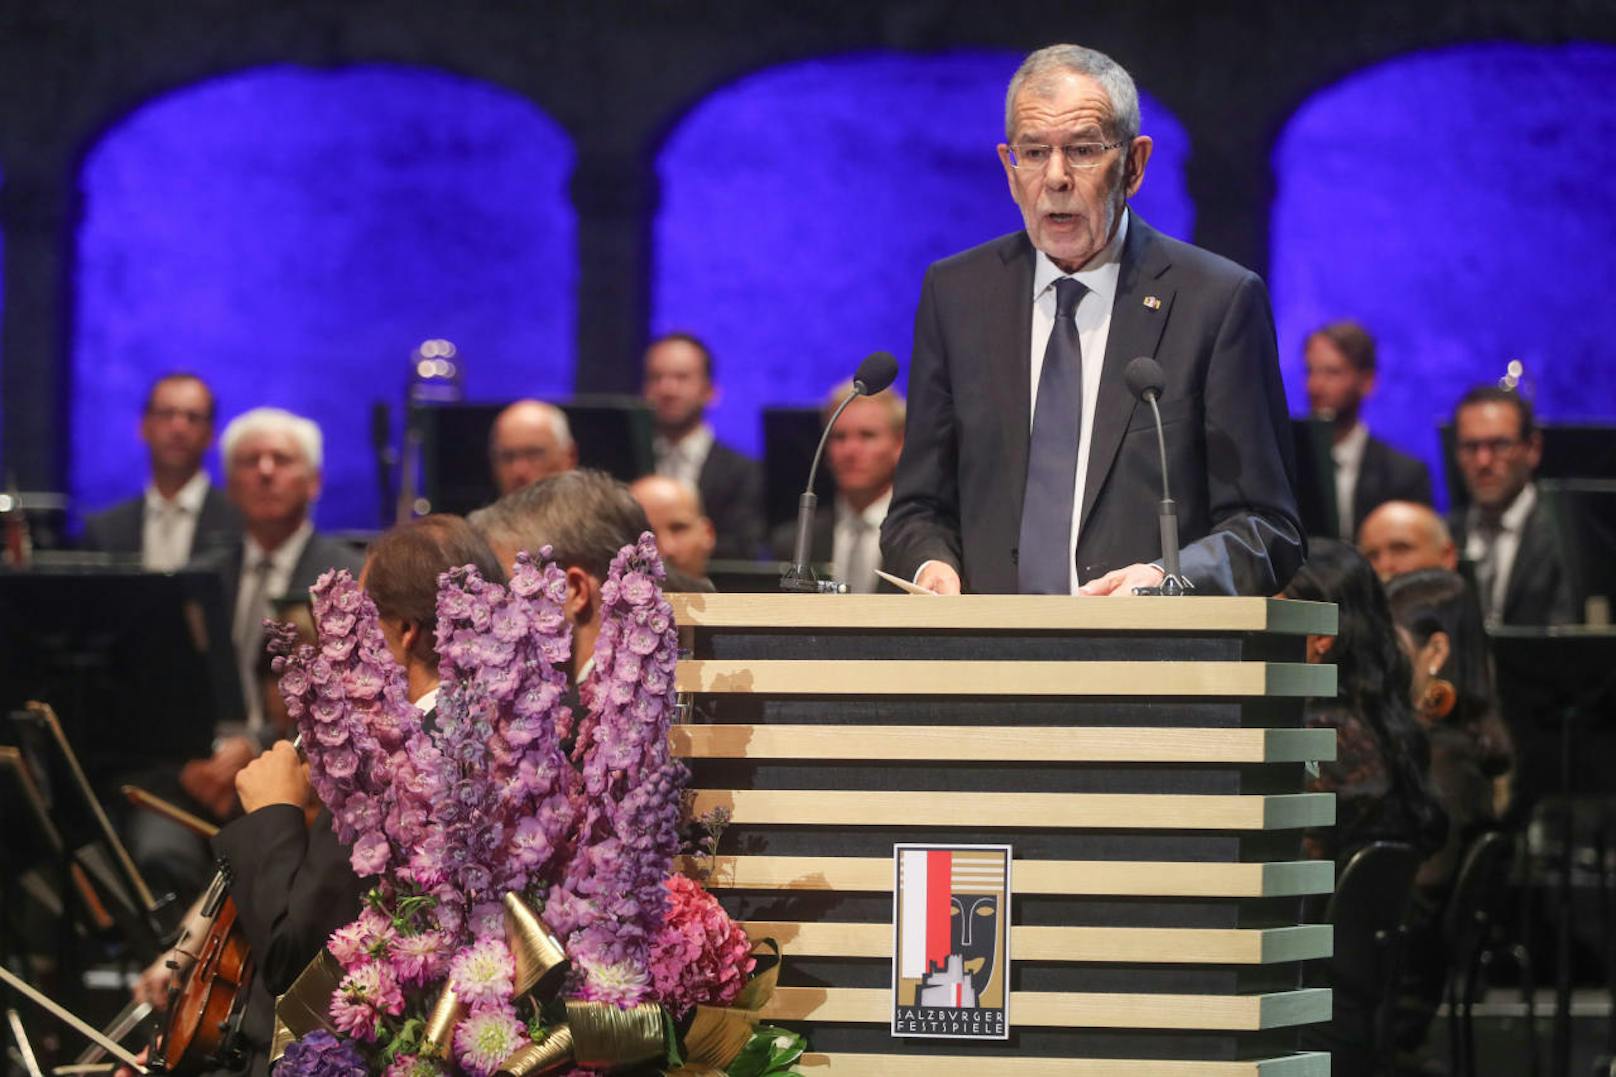 Bundespräsident Alexander Van der Bellen hat am Freitagnachmittag die diesjährigen Salzburger Festspiele feierlich eröffnet - mit wunderbarem Wetter und einem energischen Appell für die Europäische Union.